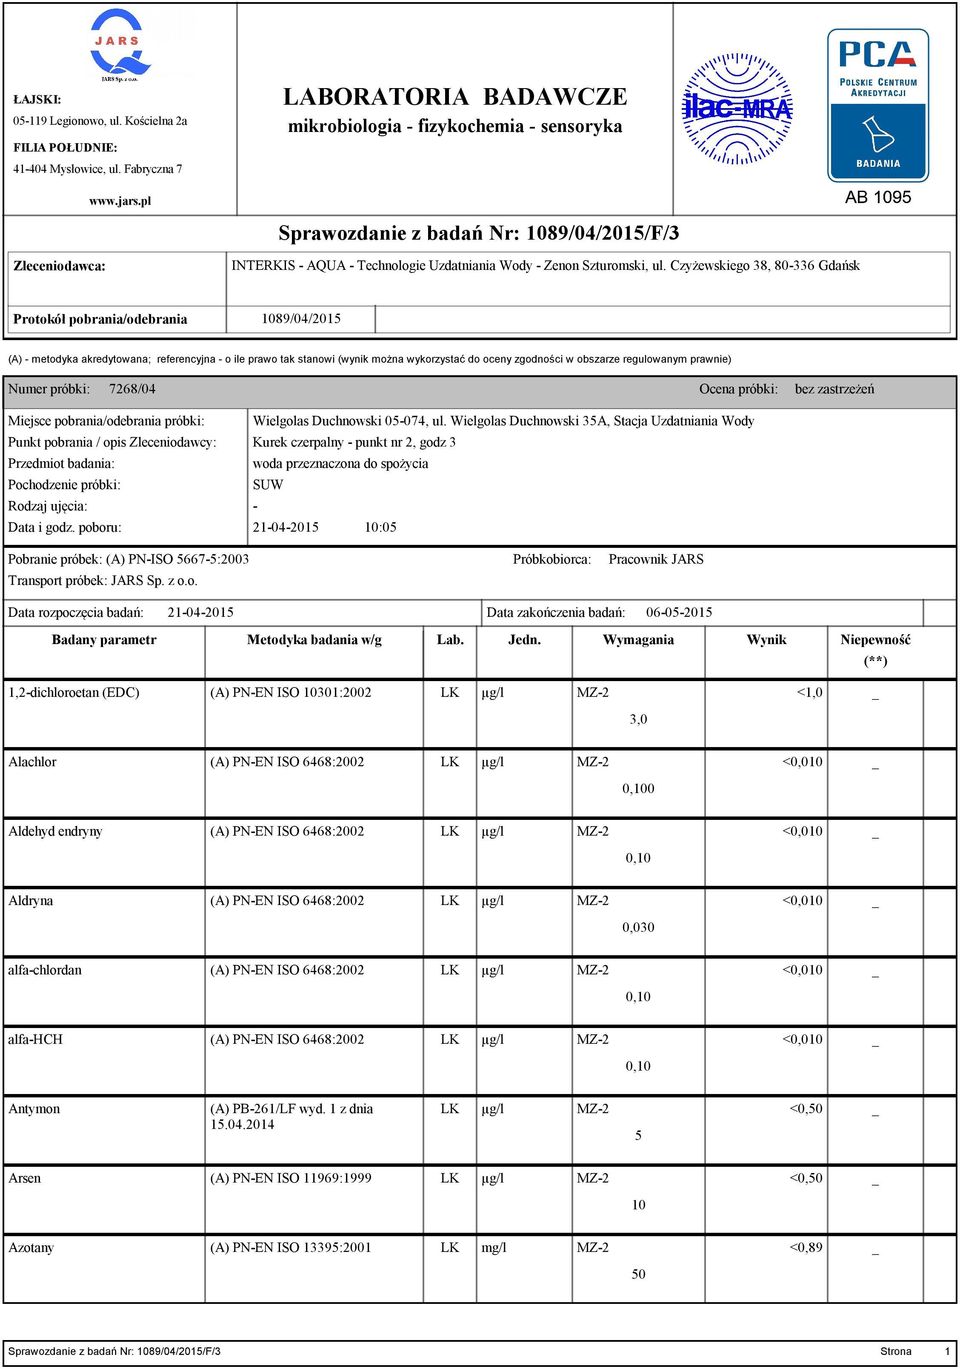 Czyżewskiego 38, 80-336 Gdańsk Protokół pobrania/odebrania 89/04/2015 (A) - metodyka akredytowana; referencyjna - o ile prawo tak stanowi (wynik można wykorzystać do oceny zgodności w obszarze